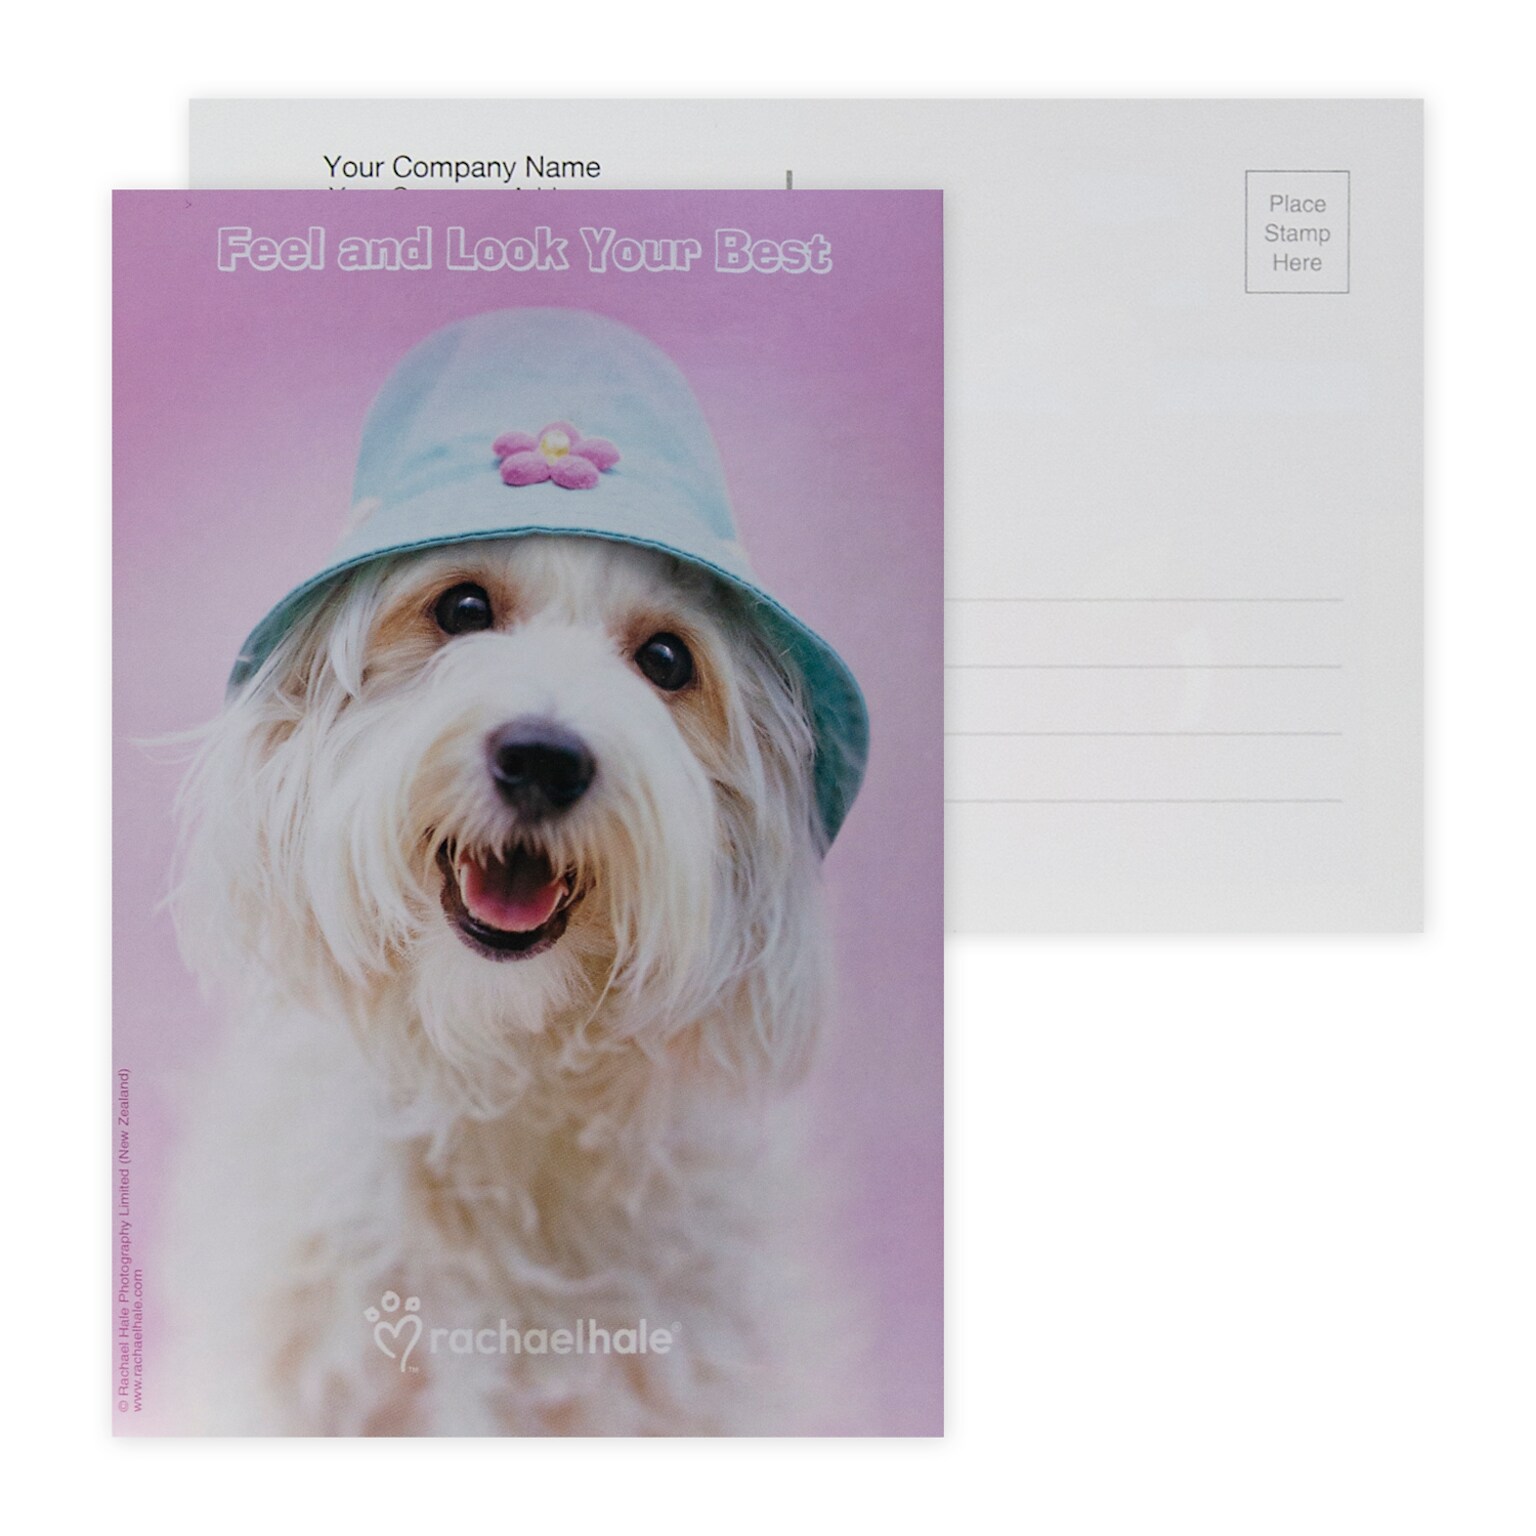 Custom Full Color Postcards, Rachel Hale Feel/Look Best, 4 x 6, 12 pt. Coated Front Side Stock, Flt Prnt, Vert, 2-Side, 100/Pk